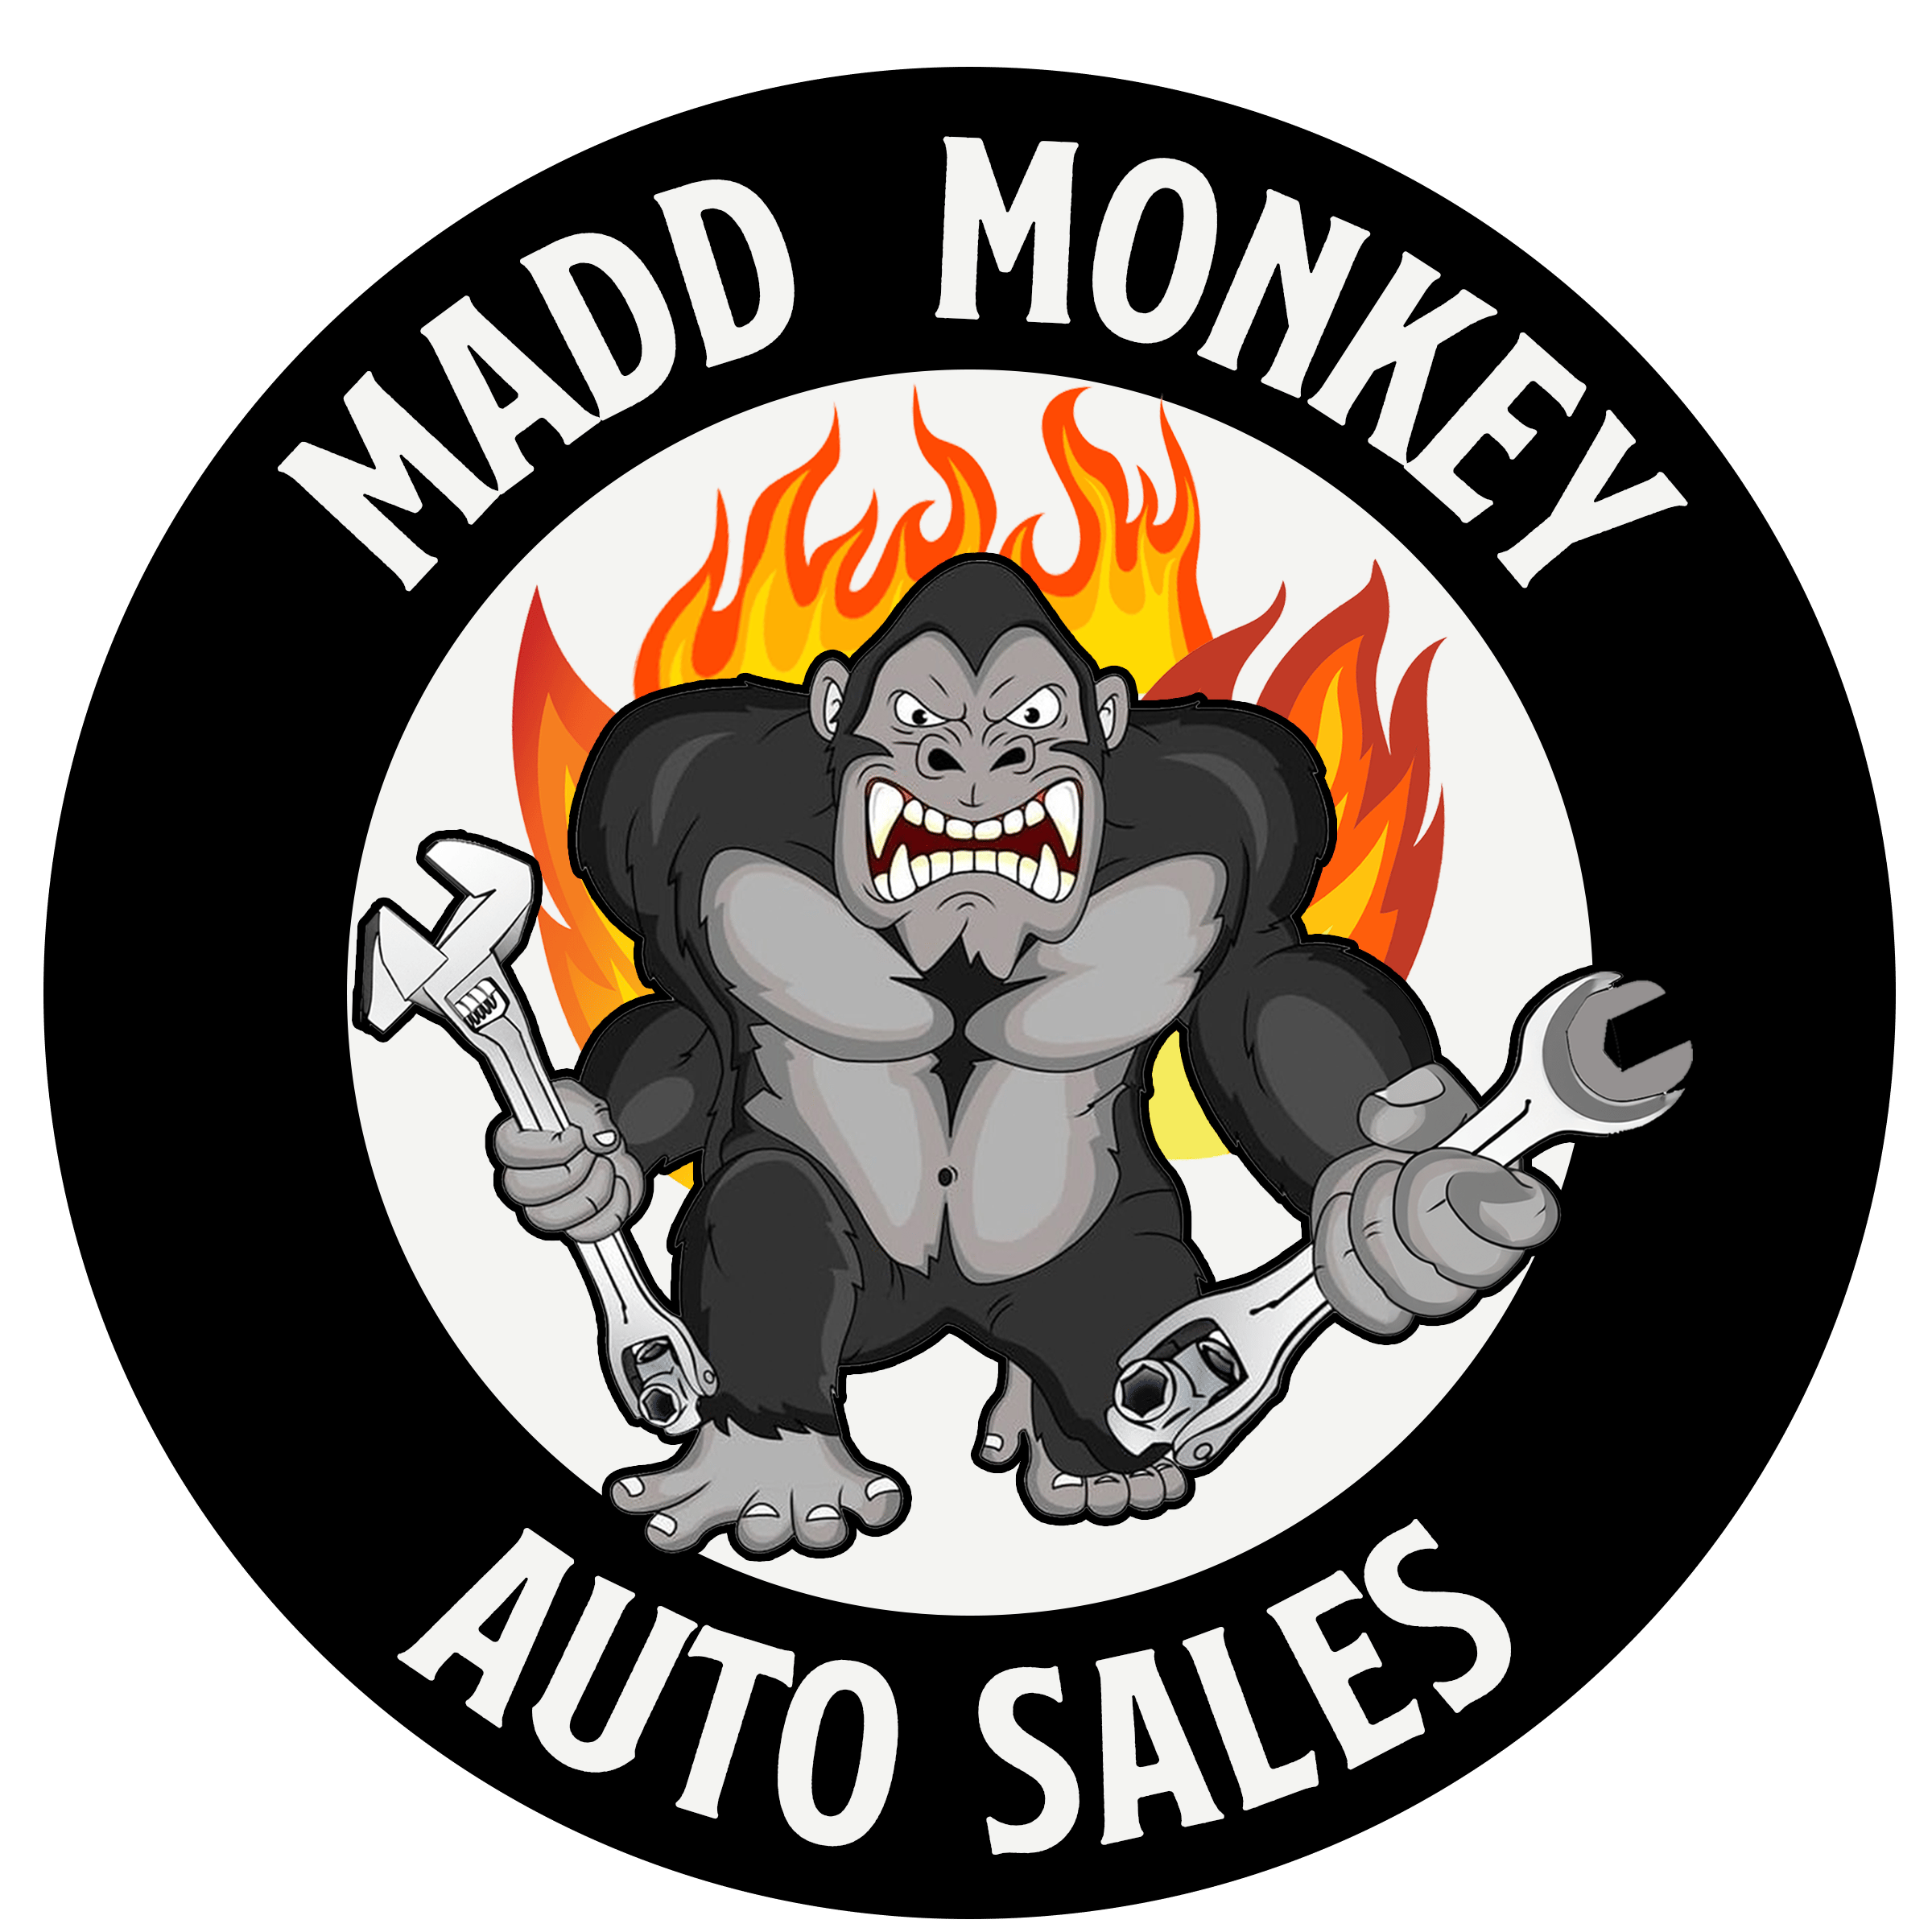 Madd Monkey Auto Sales